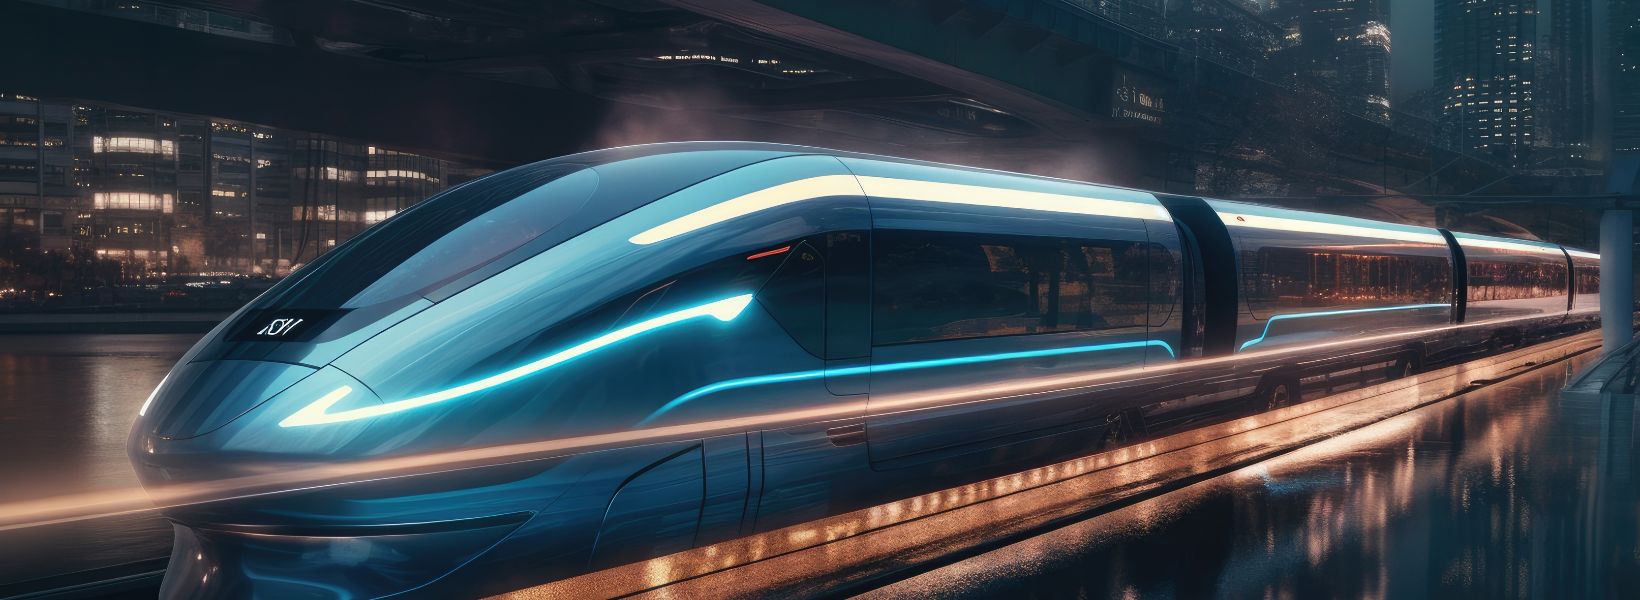  westermo investit dans la technologie mmWave pour la connectivité ferroviaire 